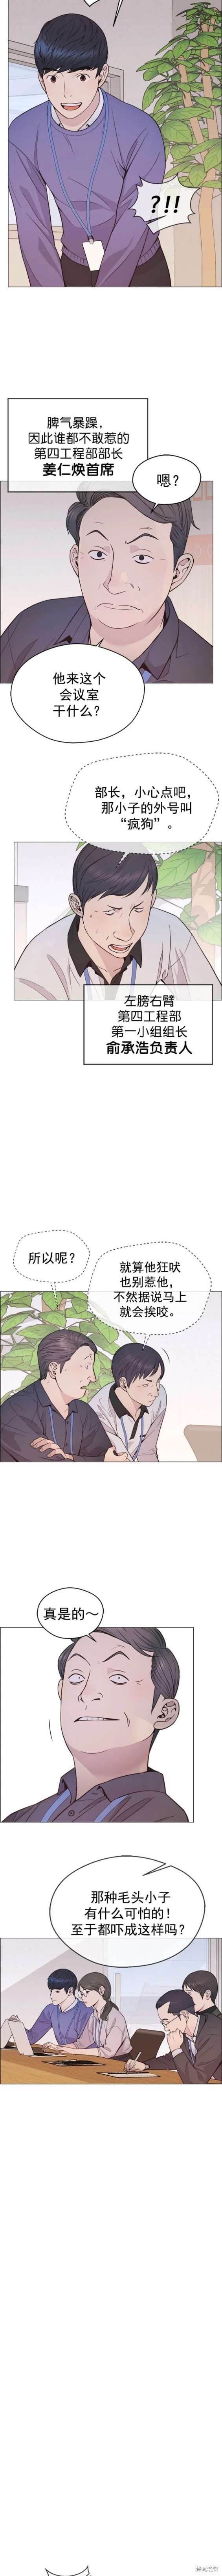 男子汉漫画,第164话7图